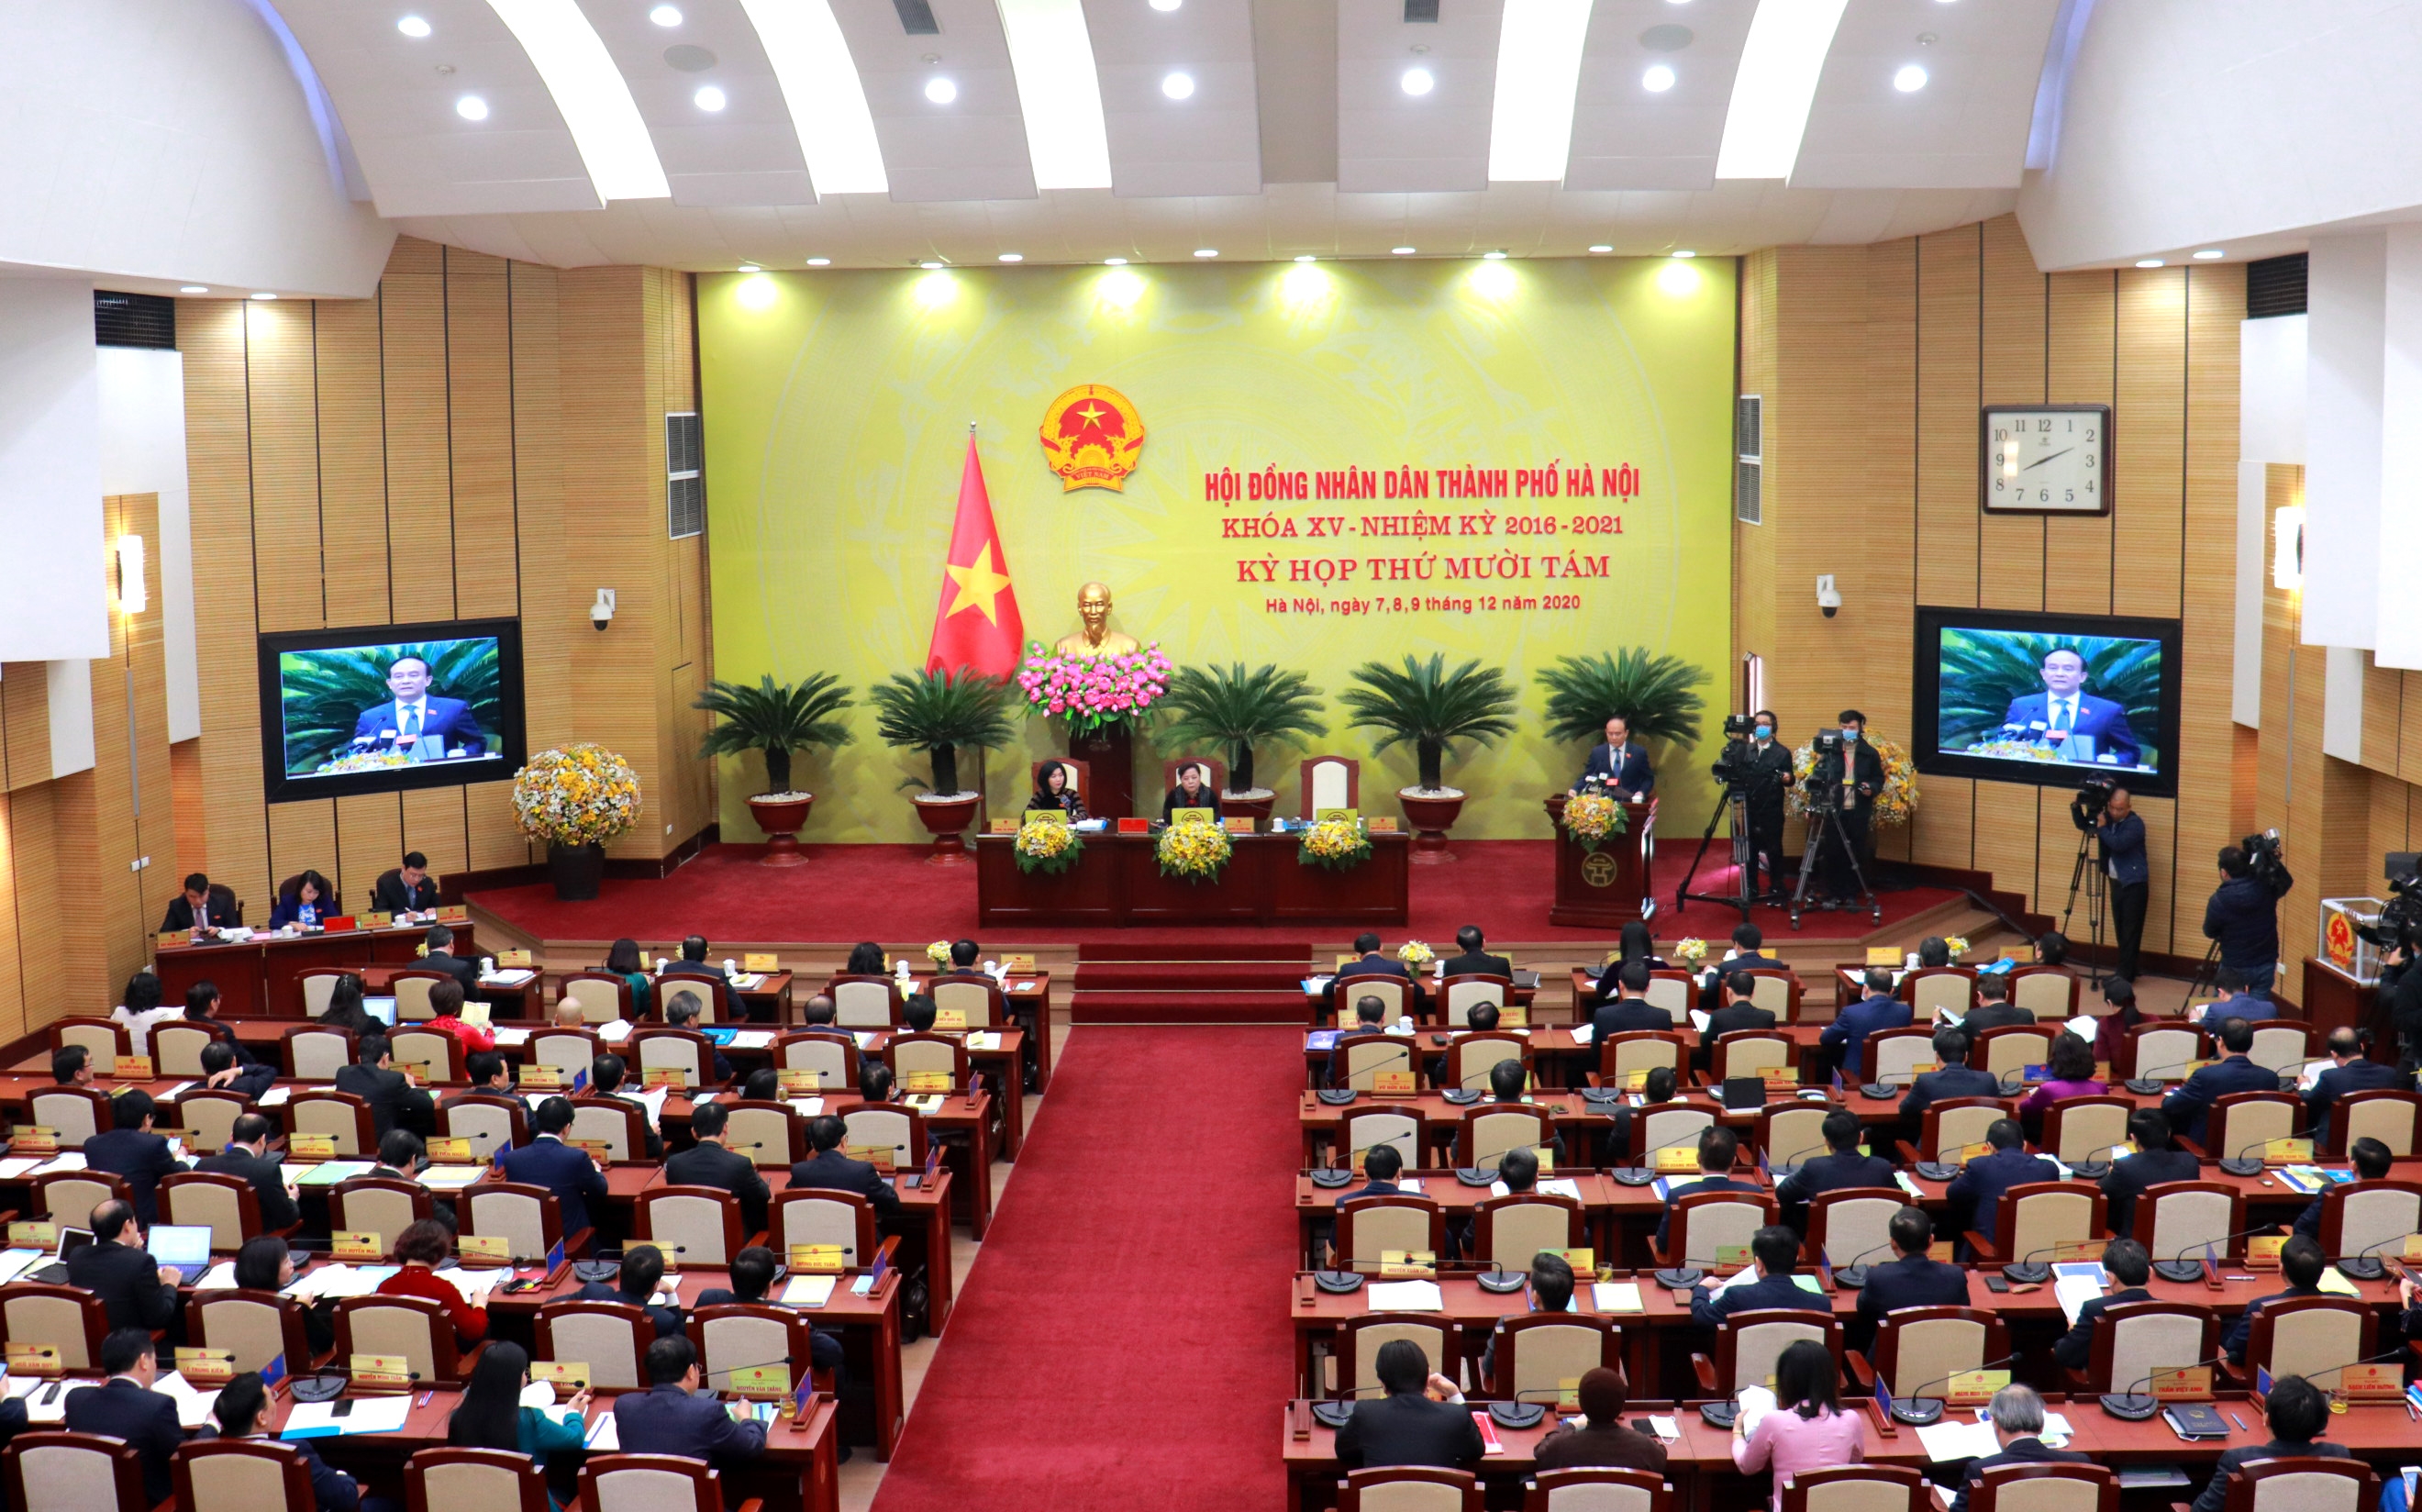 Hoạt động của Hội đồng nhân dân thành phố Hà Nội là điểm sáng, hình mẫu của cả nước